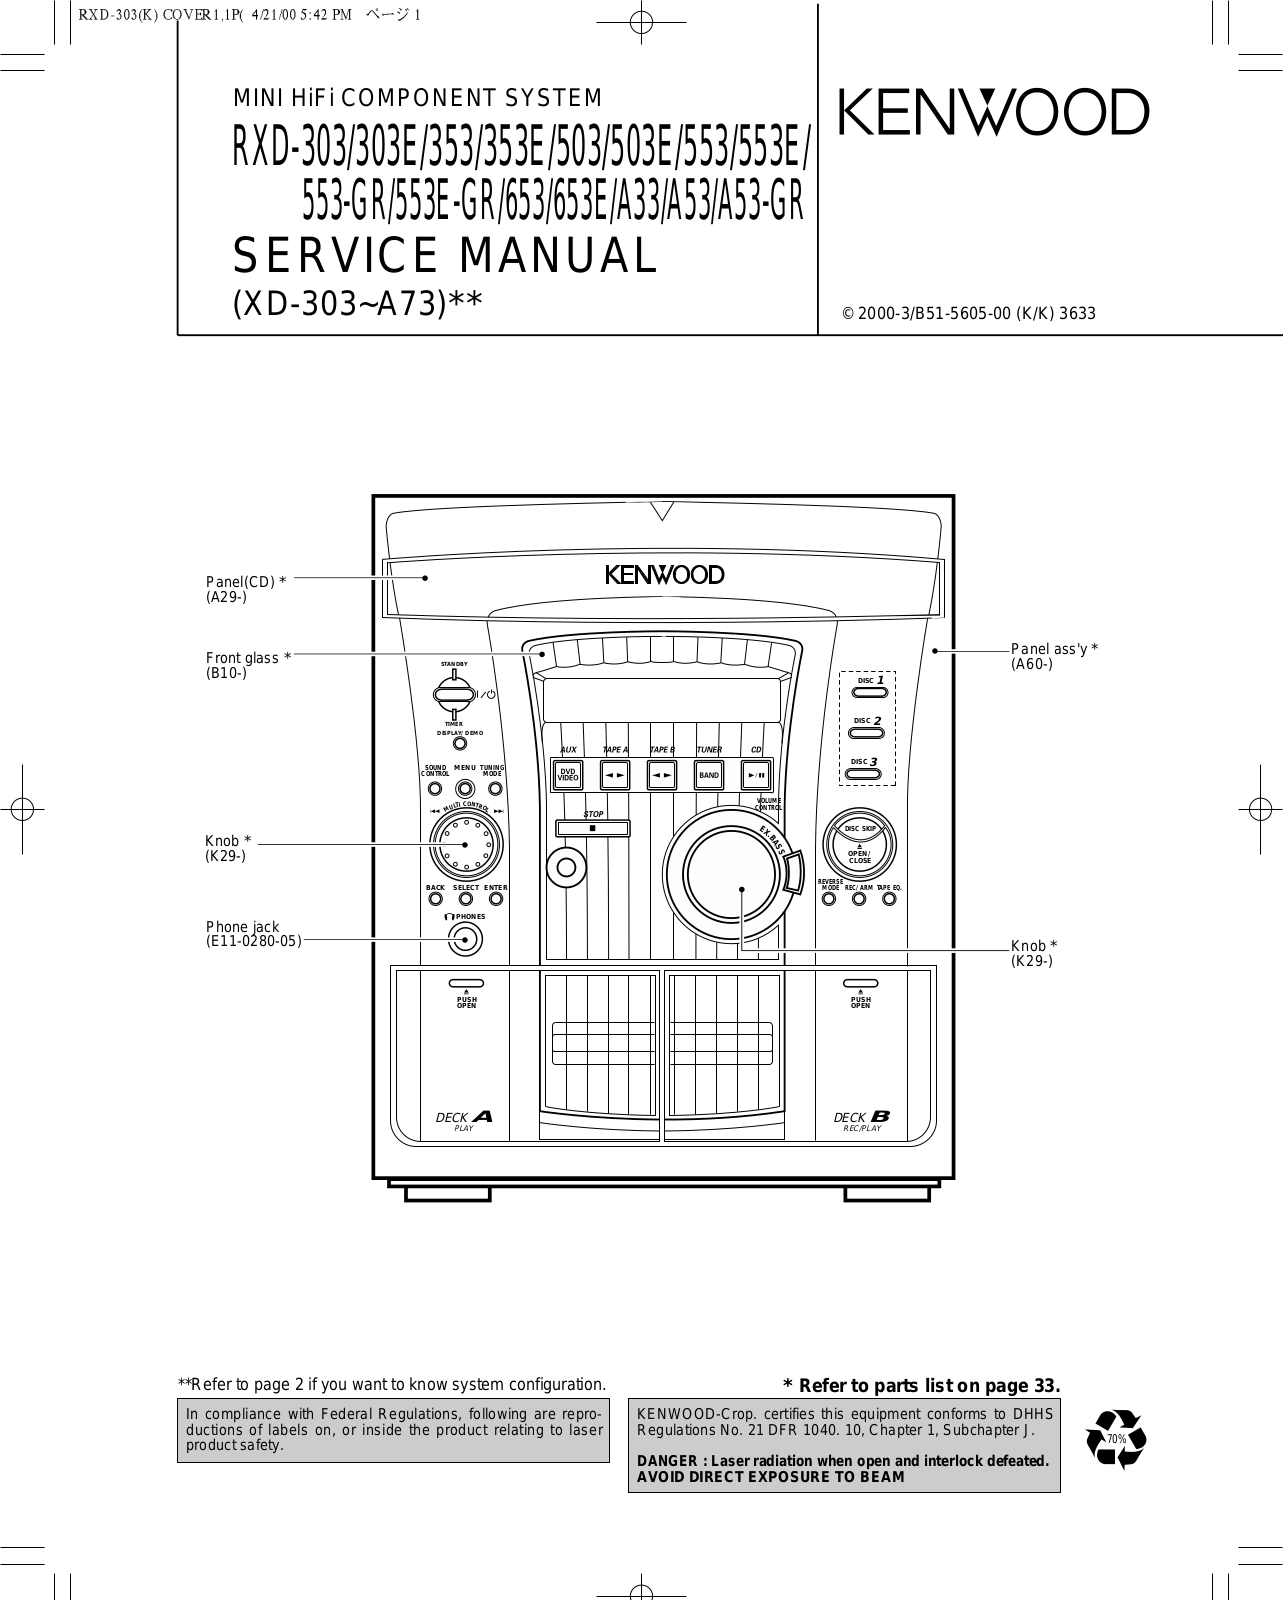 Kenwood 303, 303E, 353, 353E, 503 Service Manual